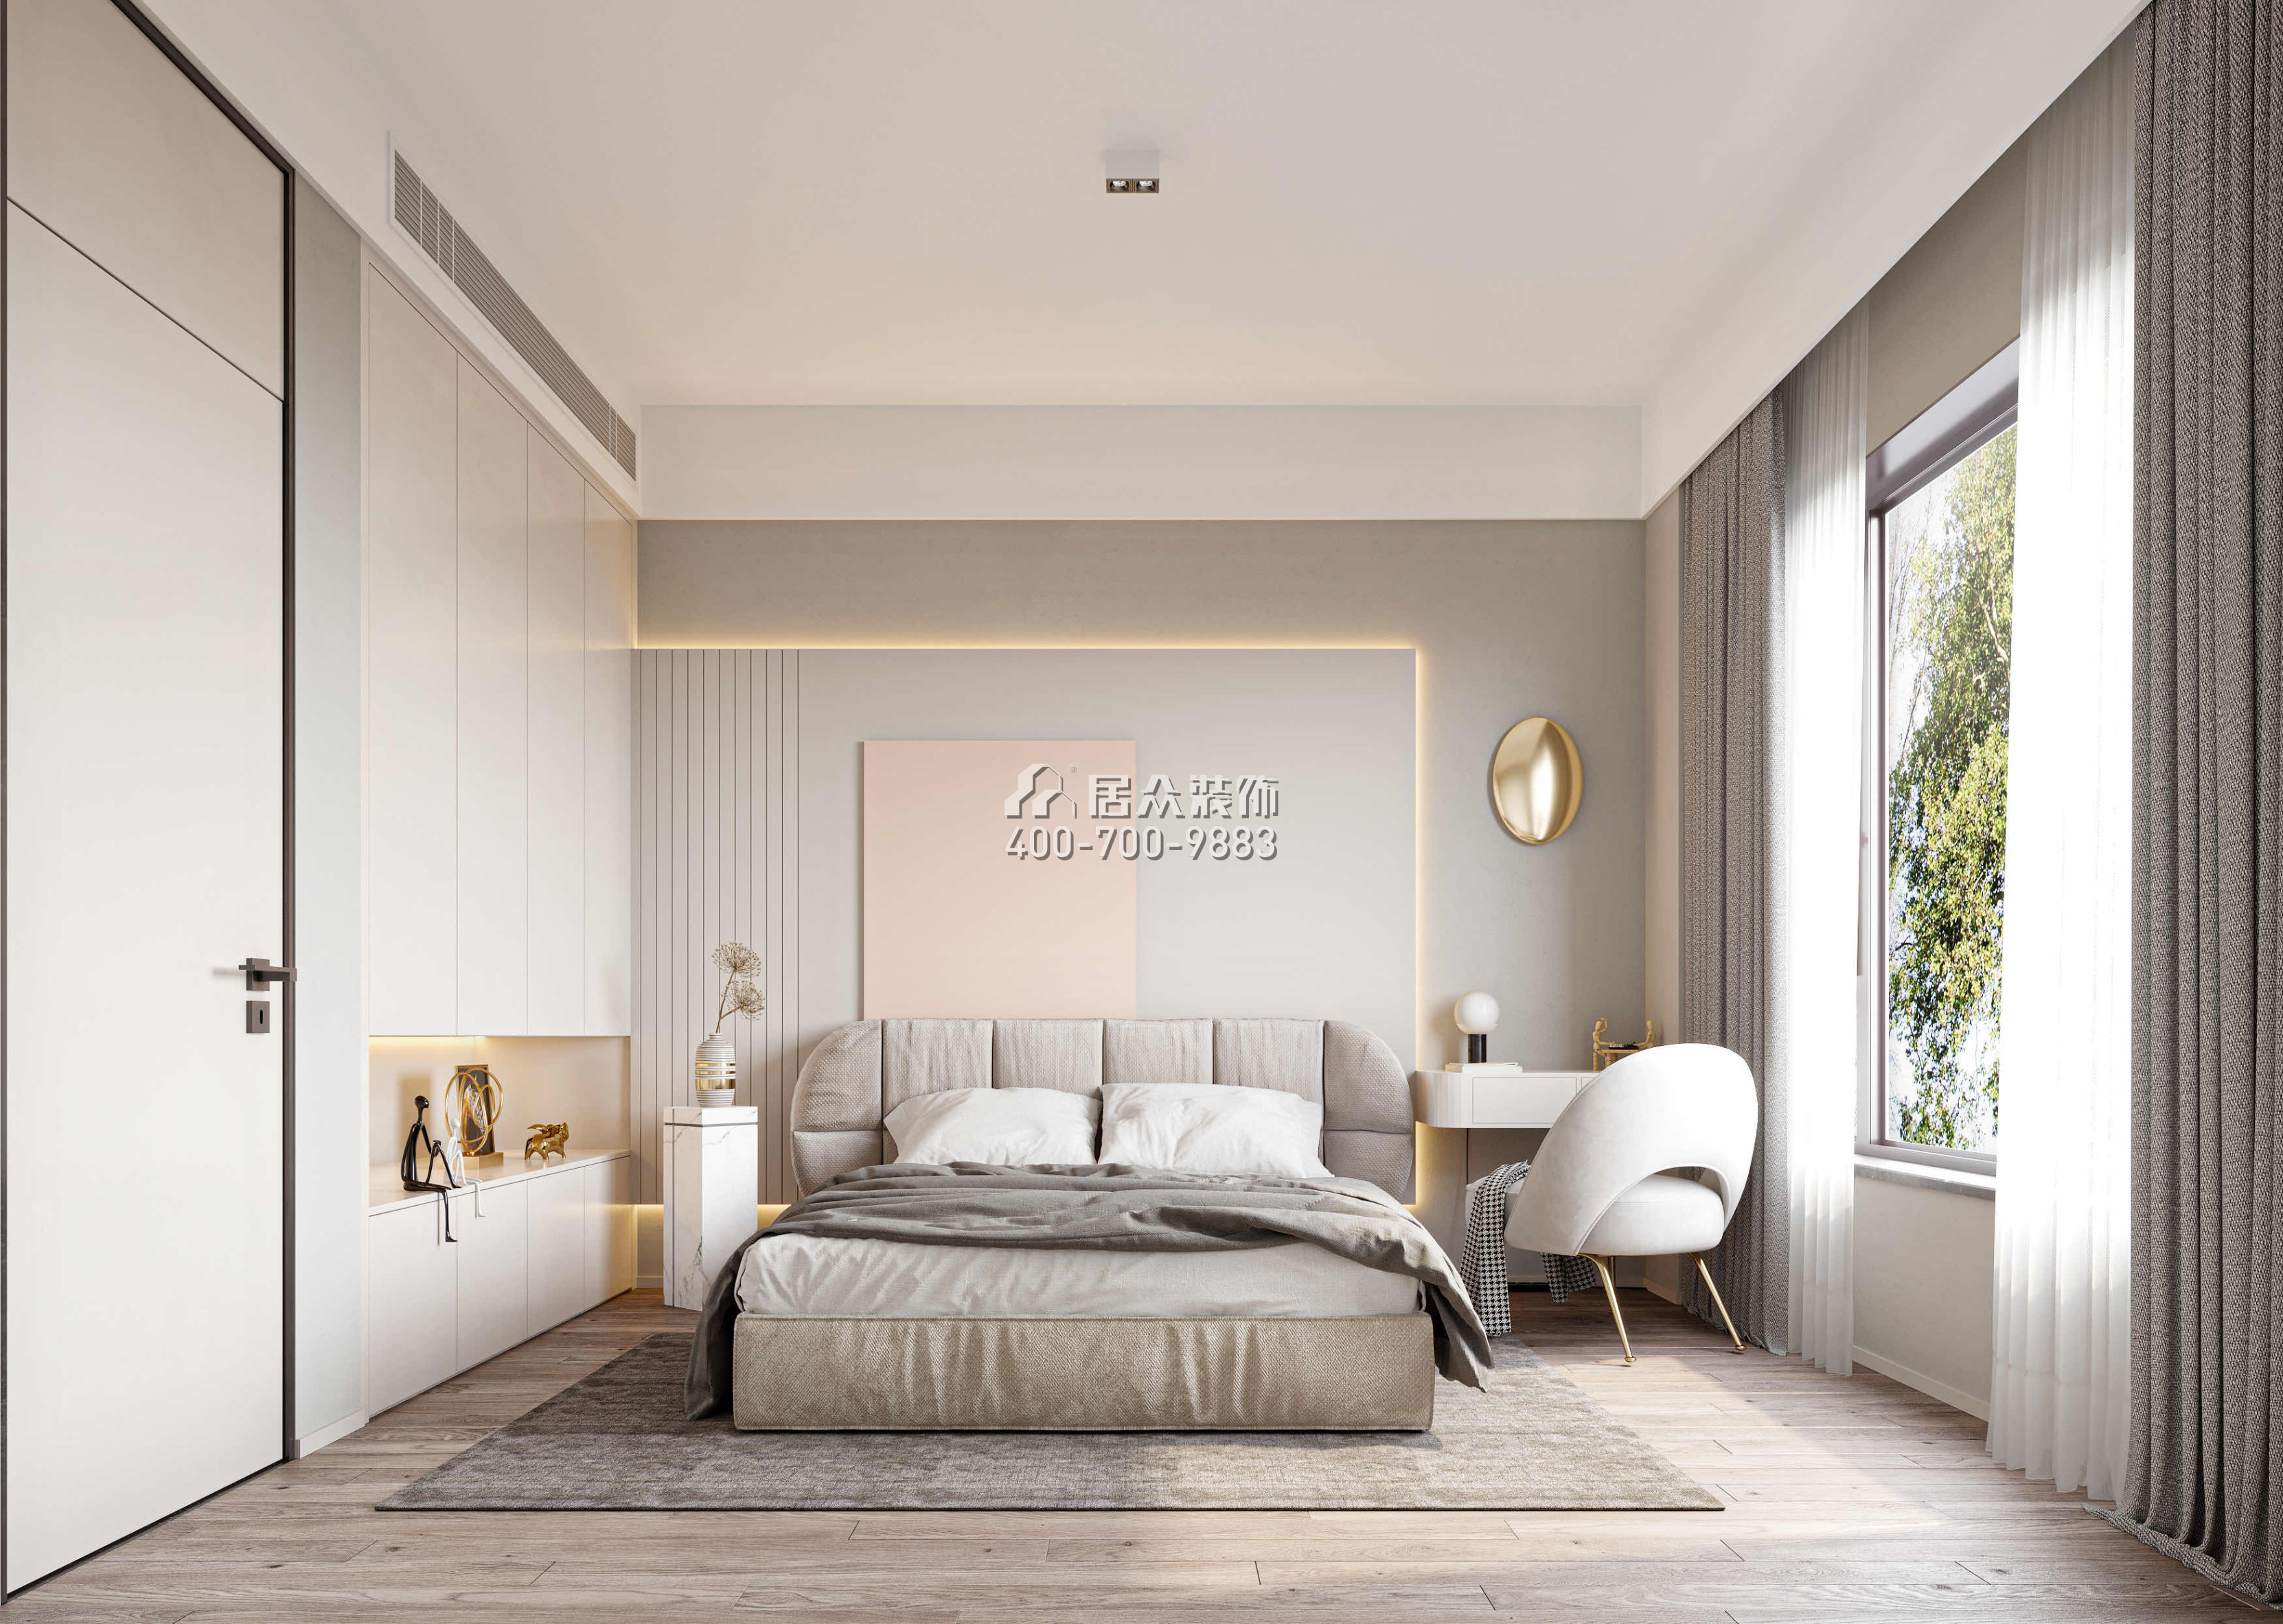 翠湖香山别苑320平方米现代简约风格复式户型卧室装修效果图